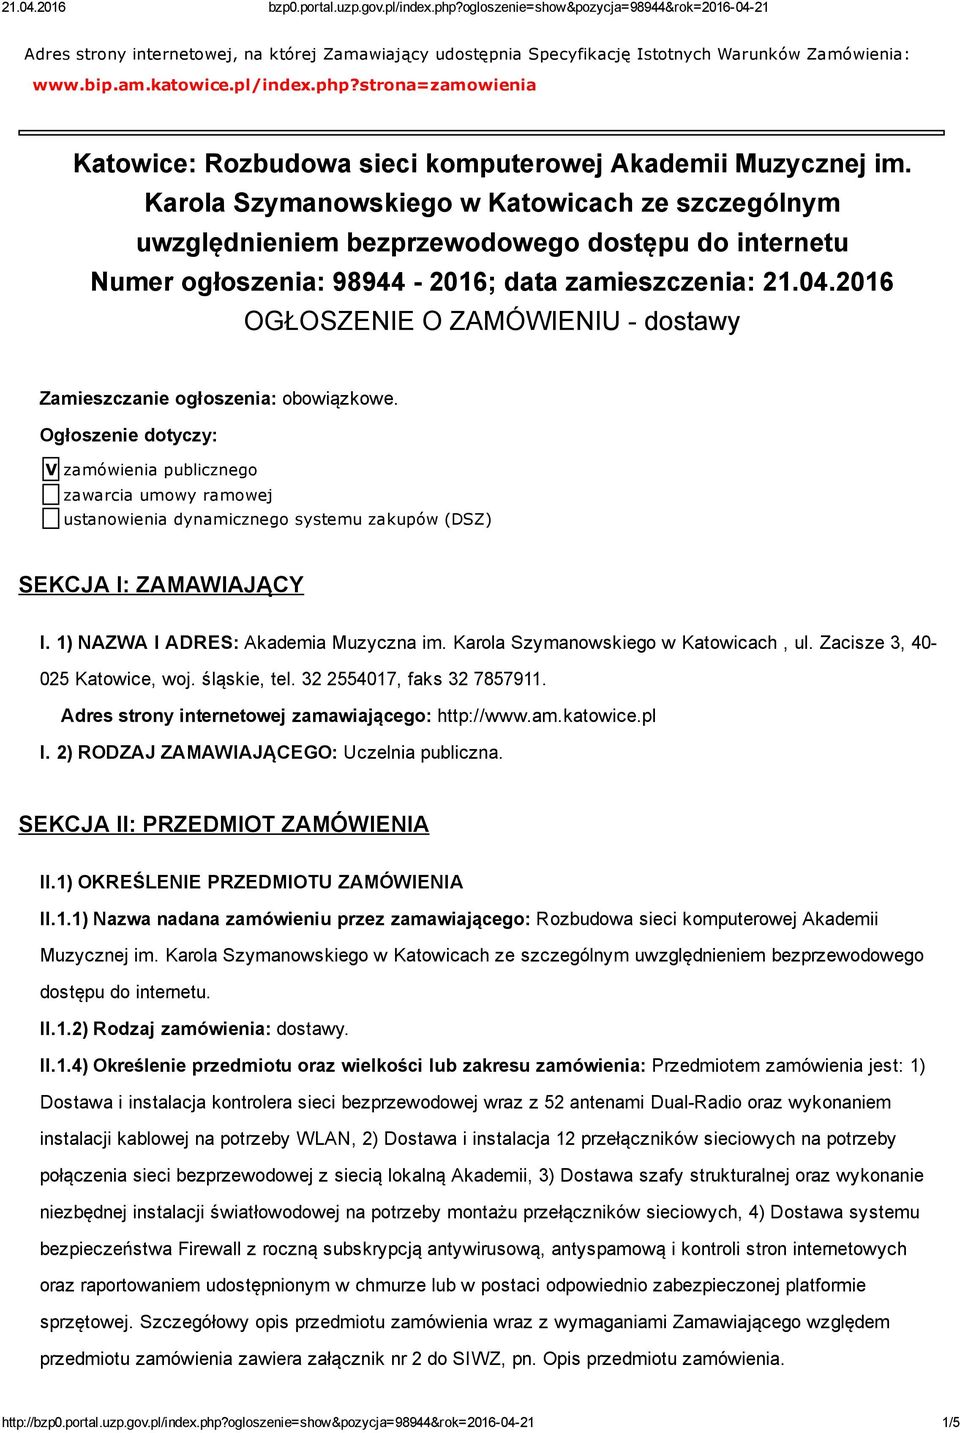 Karola Szymanowskiego w Katowicach ze szczególnym uwzględnieniem bezprzewodowego dostępu do internetu Numer ogłoszenia: 98944 2016; data zamieszczenia: 21.04.